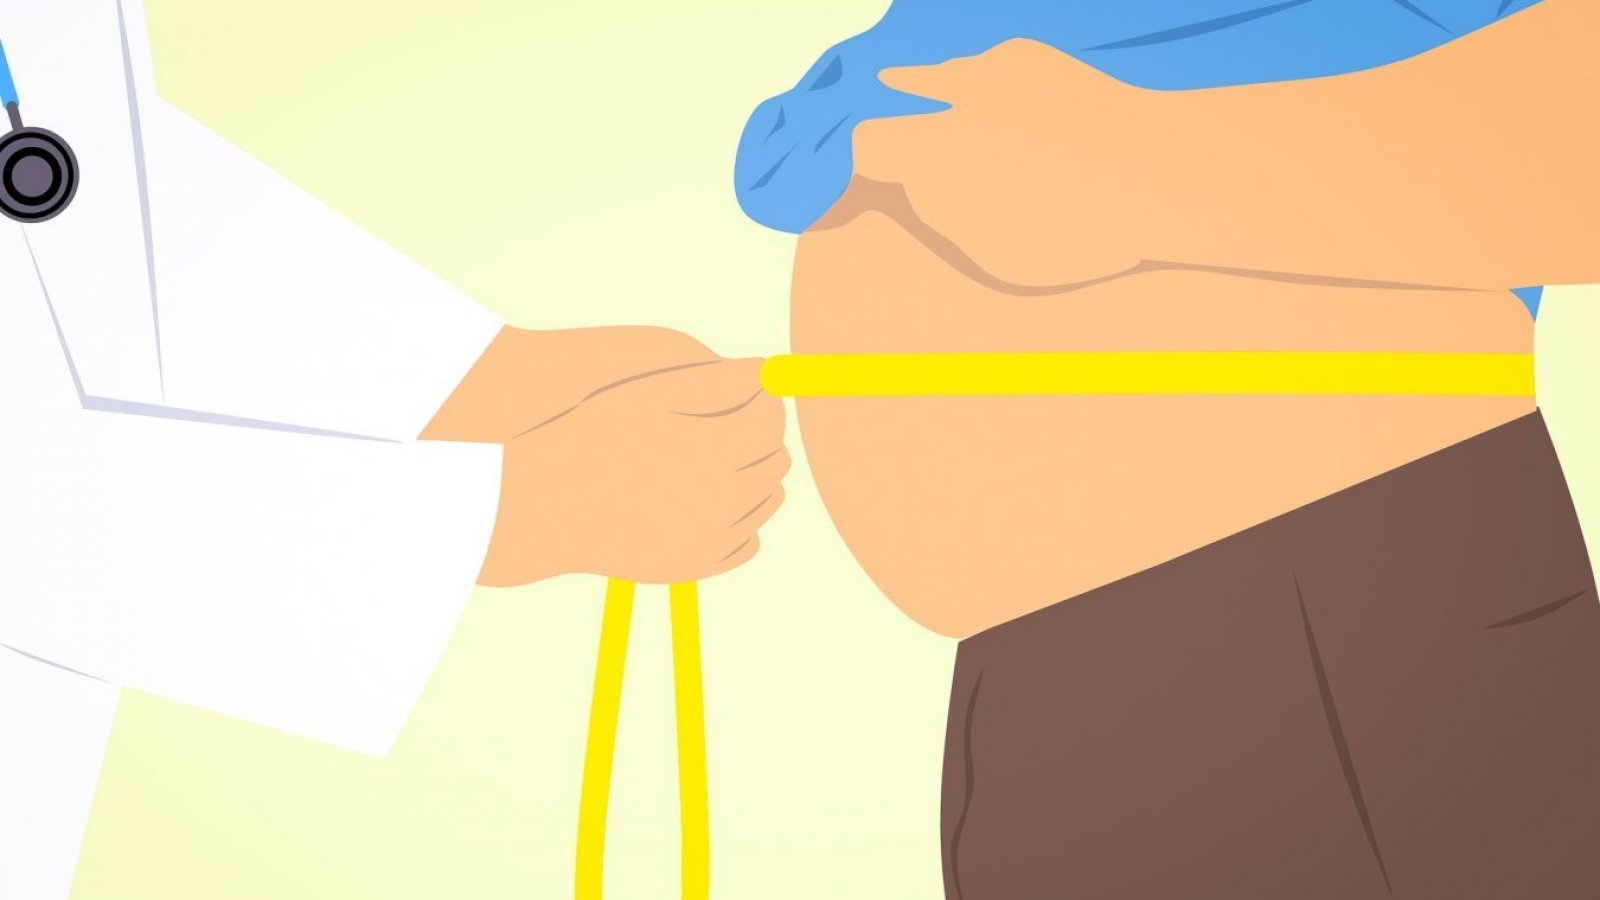 Gráfica de un doctor midiendo la cintura de una persona.